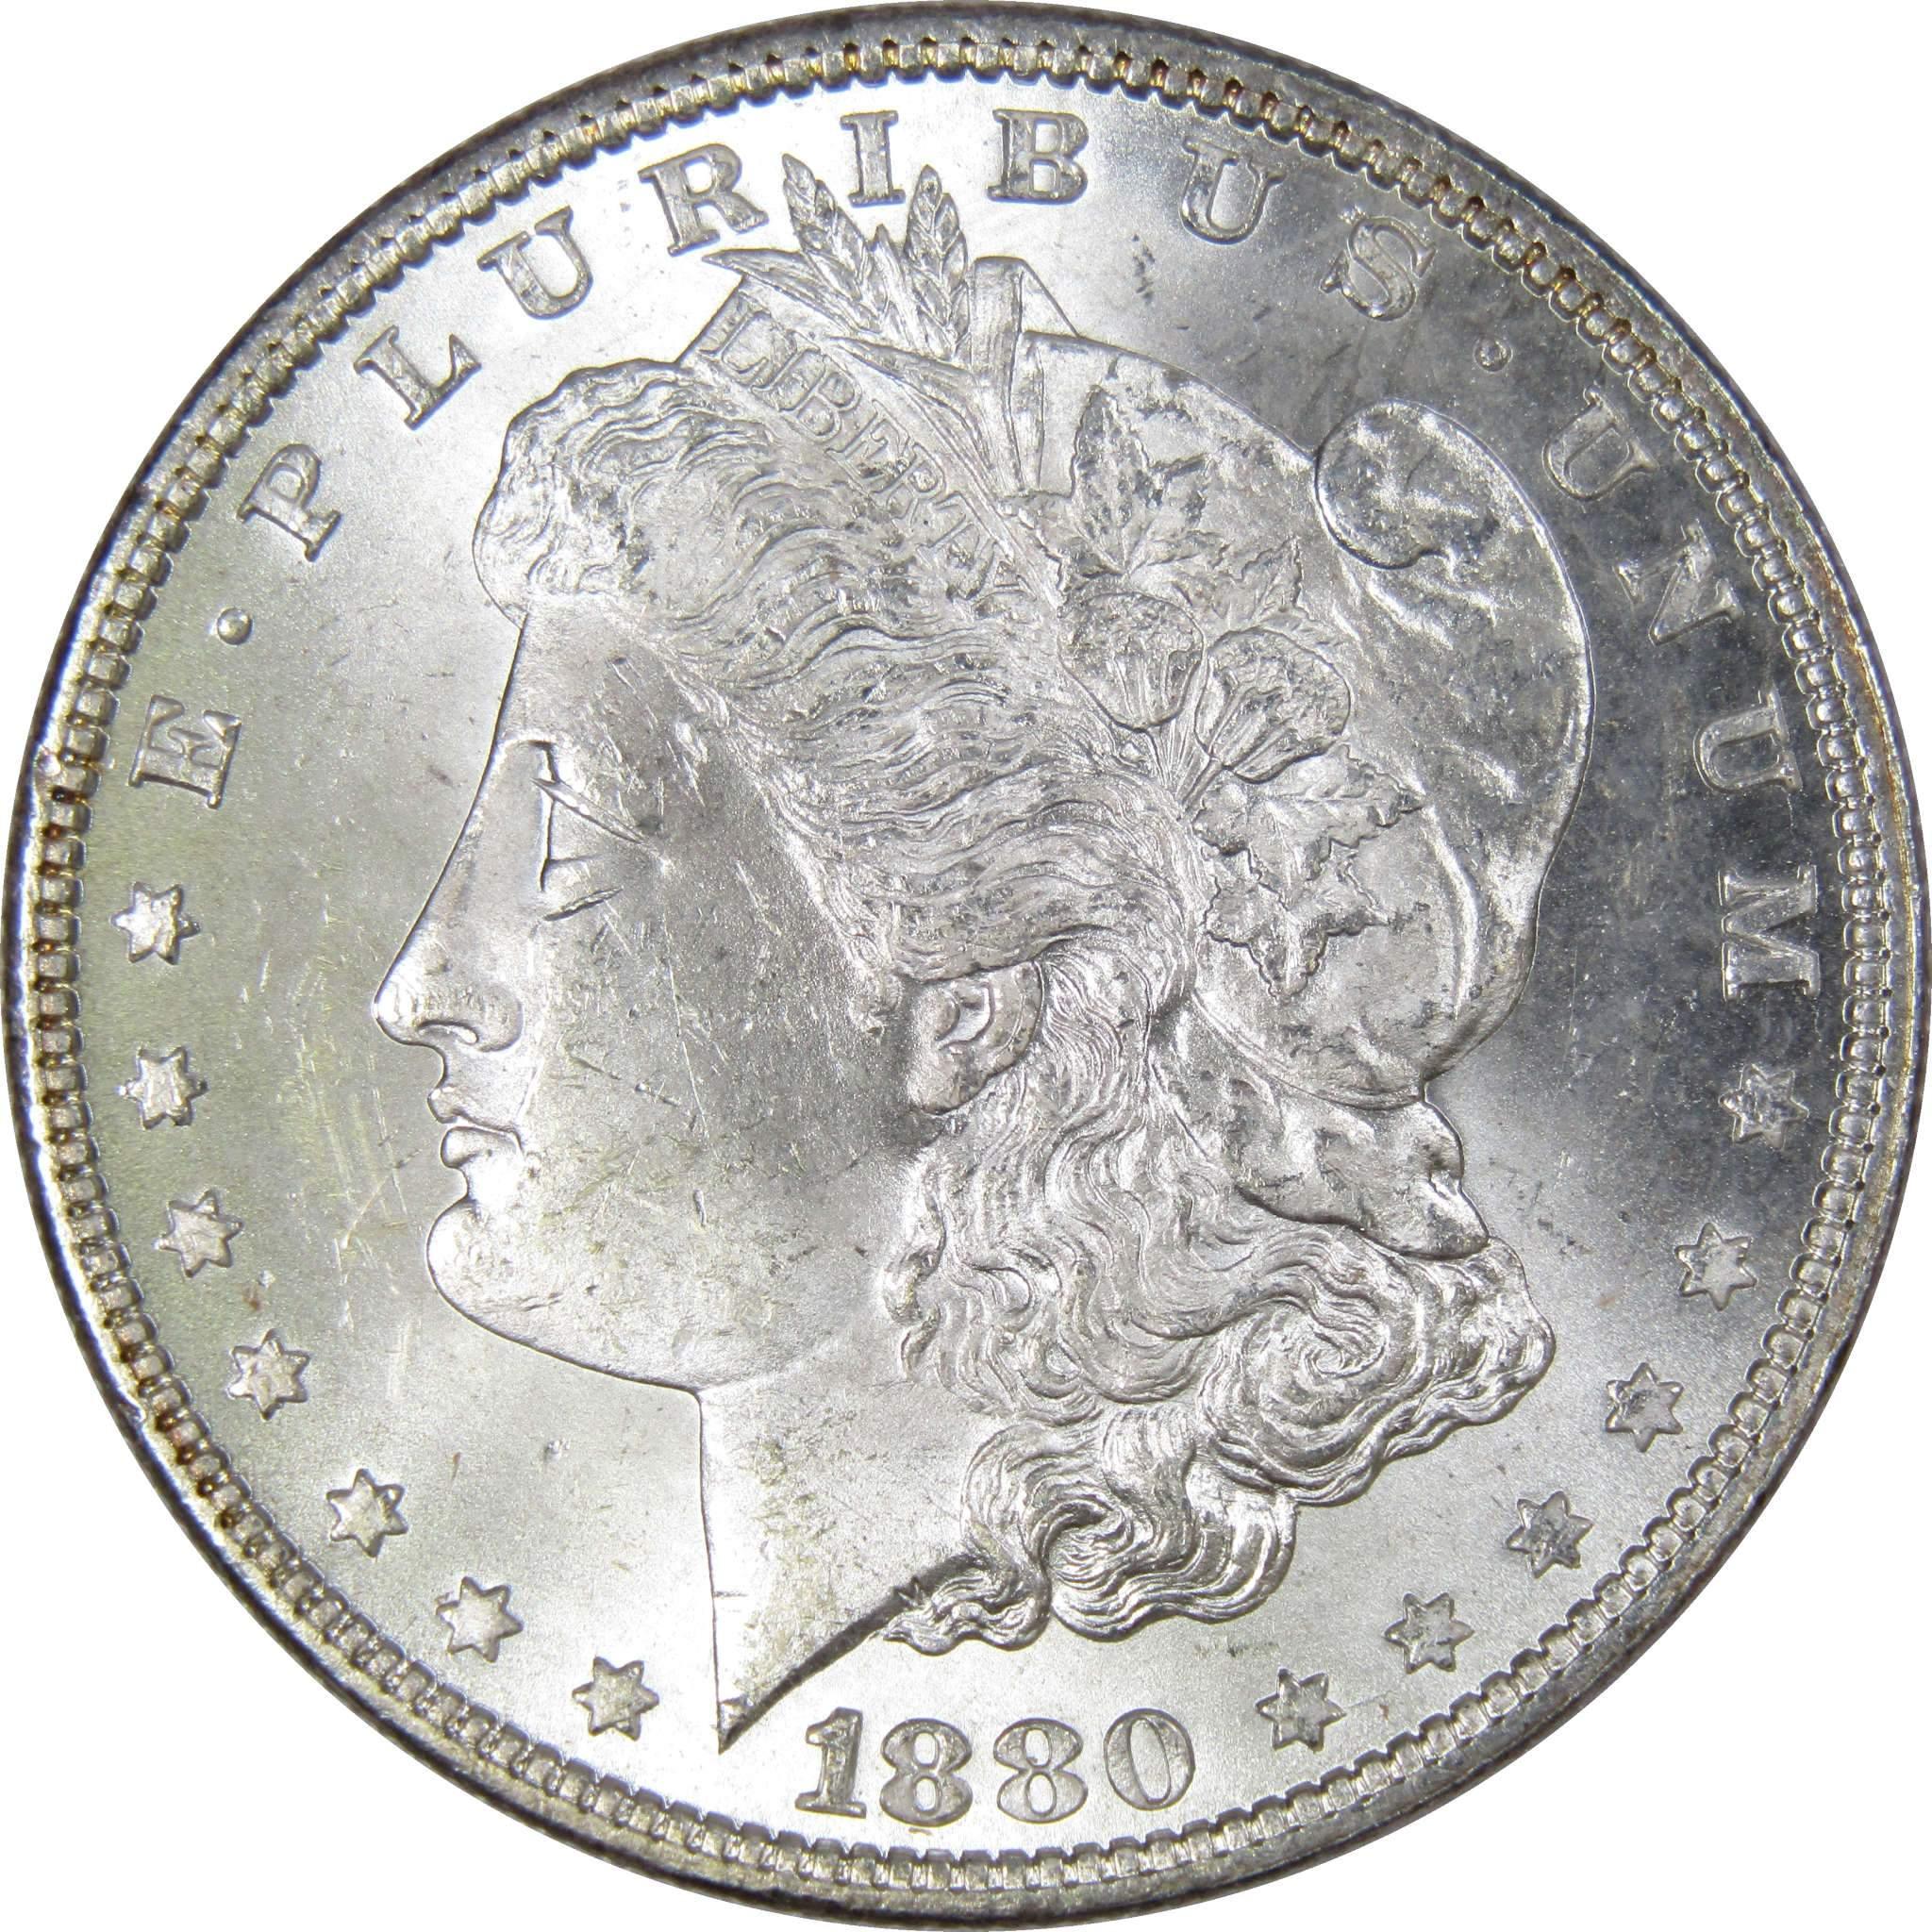 1880 Morgan Dollar BU Uncirculated Mint State 90% Silver $1 US Coin Collectible - Morgan coin - Morgan silver dollar - Morgan silver dollar for sale - Profile Coins &amp; Collectibles